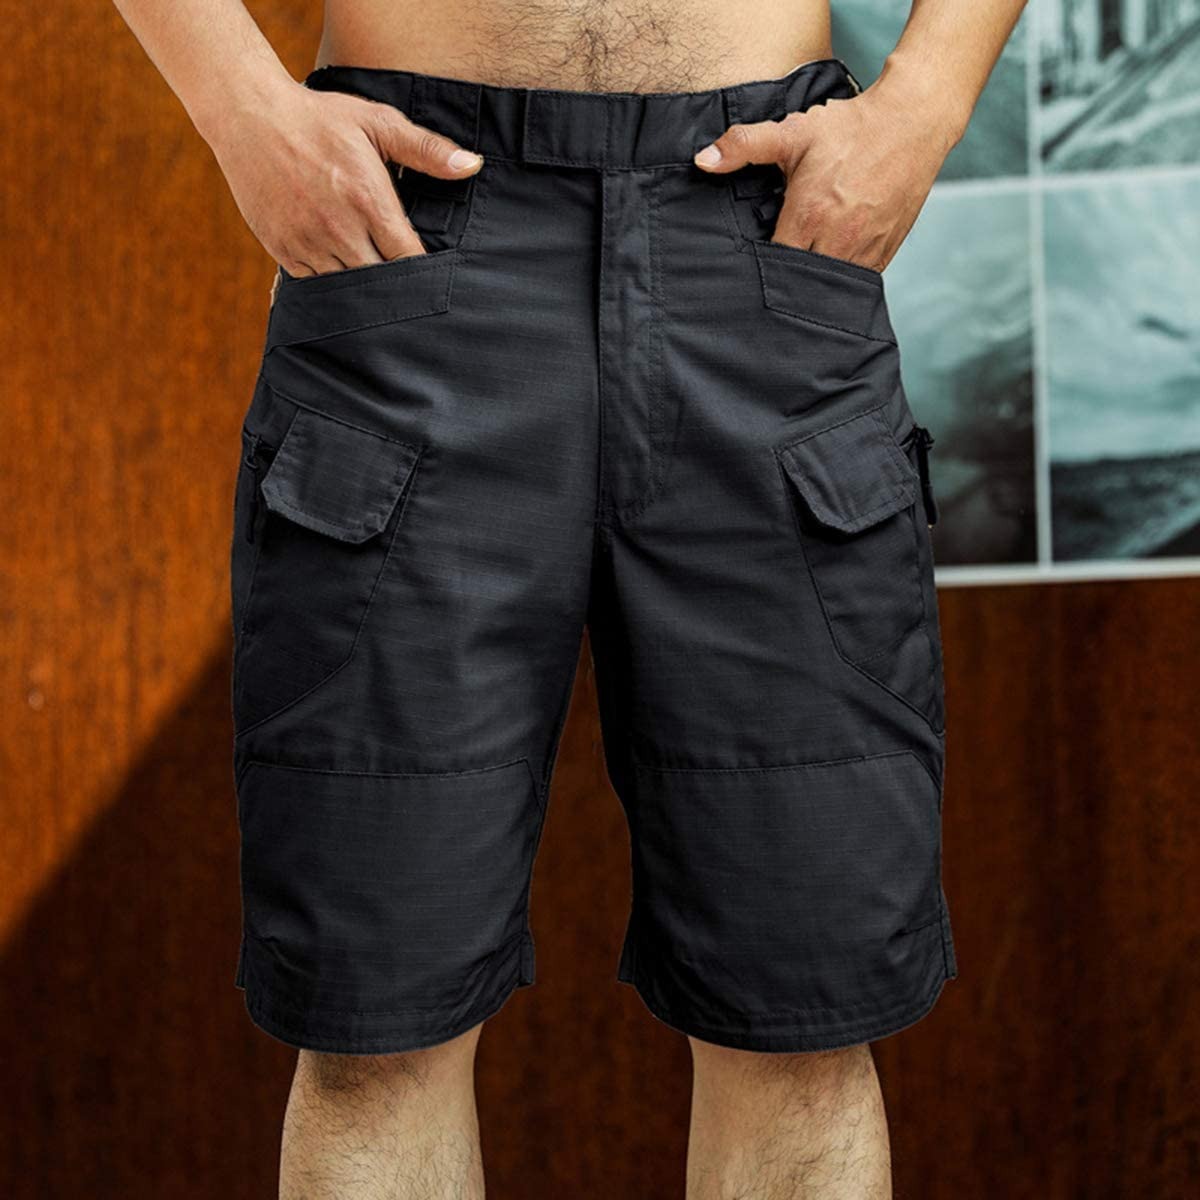 shorts-mannen-urban-militaire-waterdicht_main-3.jpg